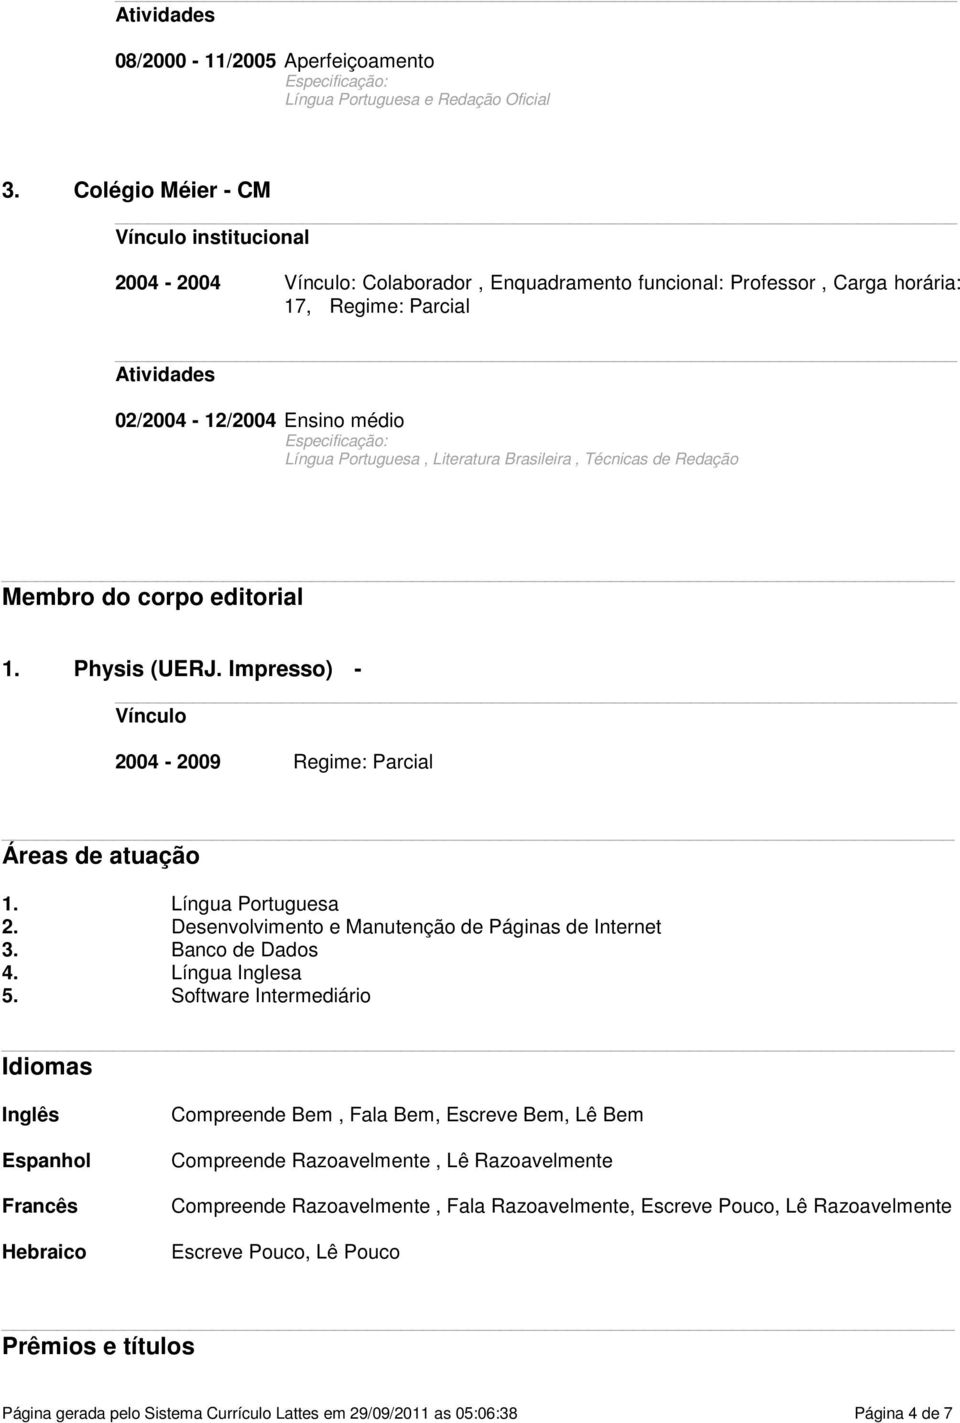 Portuguesa, Literatura Brasileira, Técnicas de Redação Membro do corpo editorial 1. Physis (UERJ. Impresso) - Vínculo 2004-2009 Regime: Parcial Áreas de atuação 1. Língua Portuguesa 2.